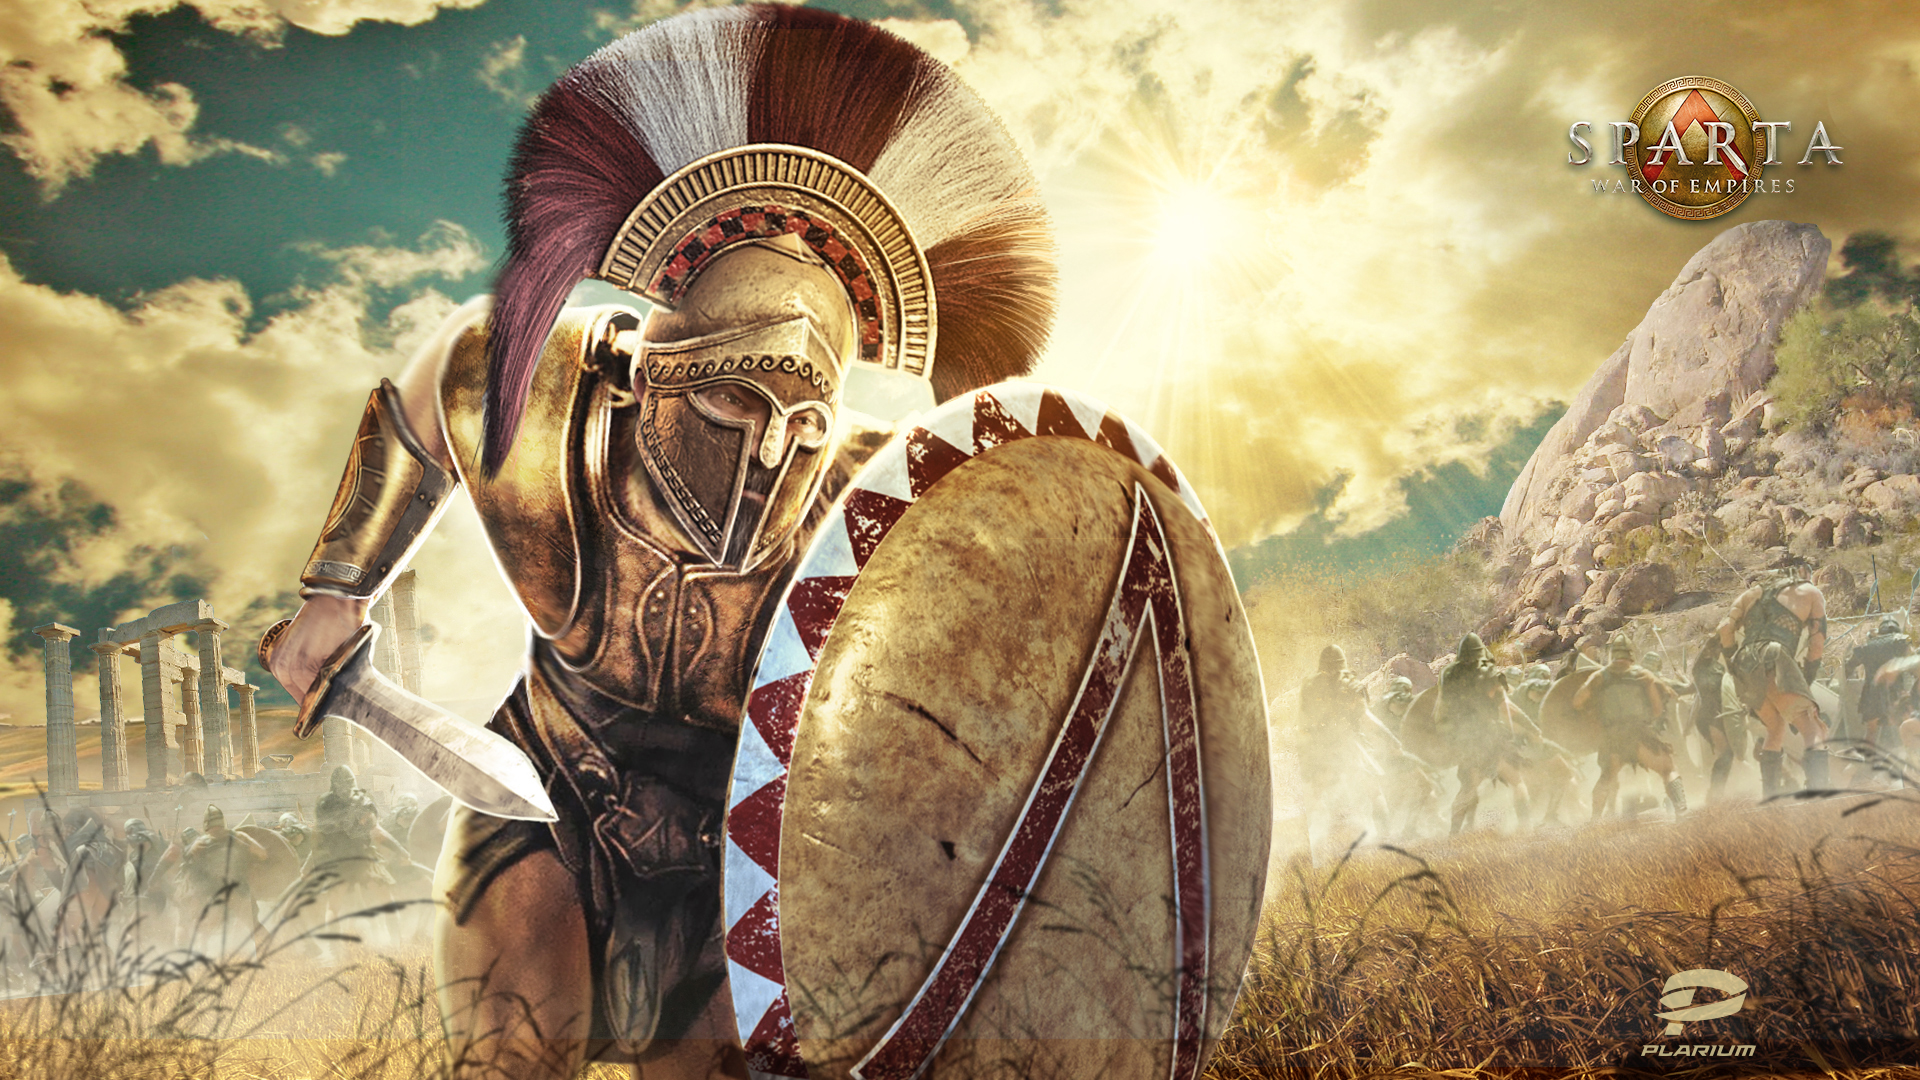 Sparta War of Empires wallpaper 8 1920x1080